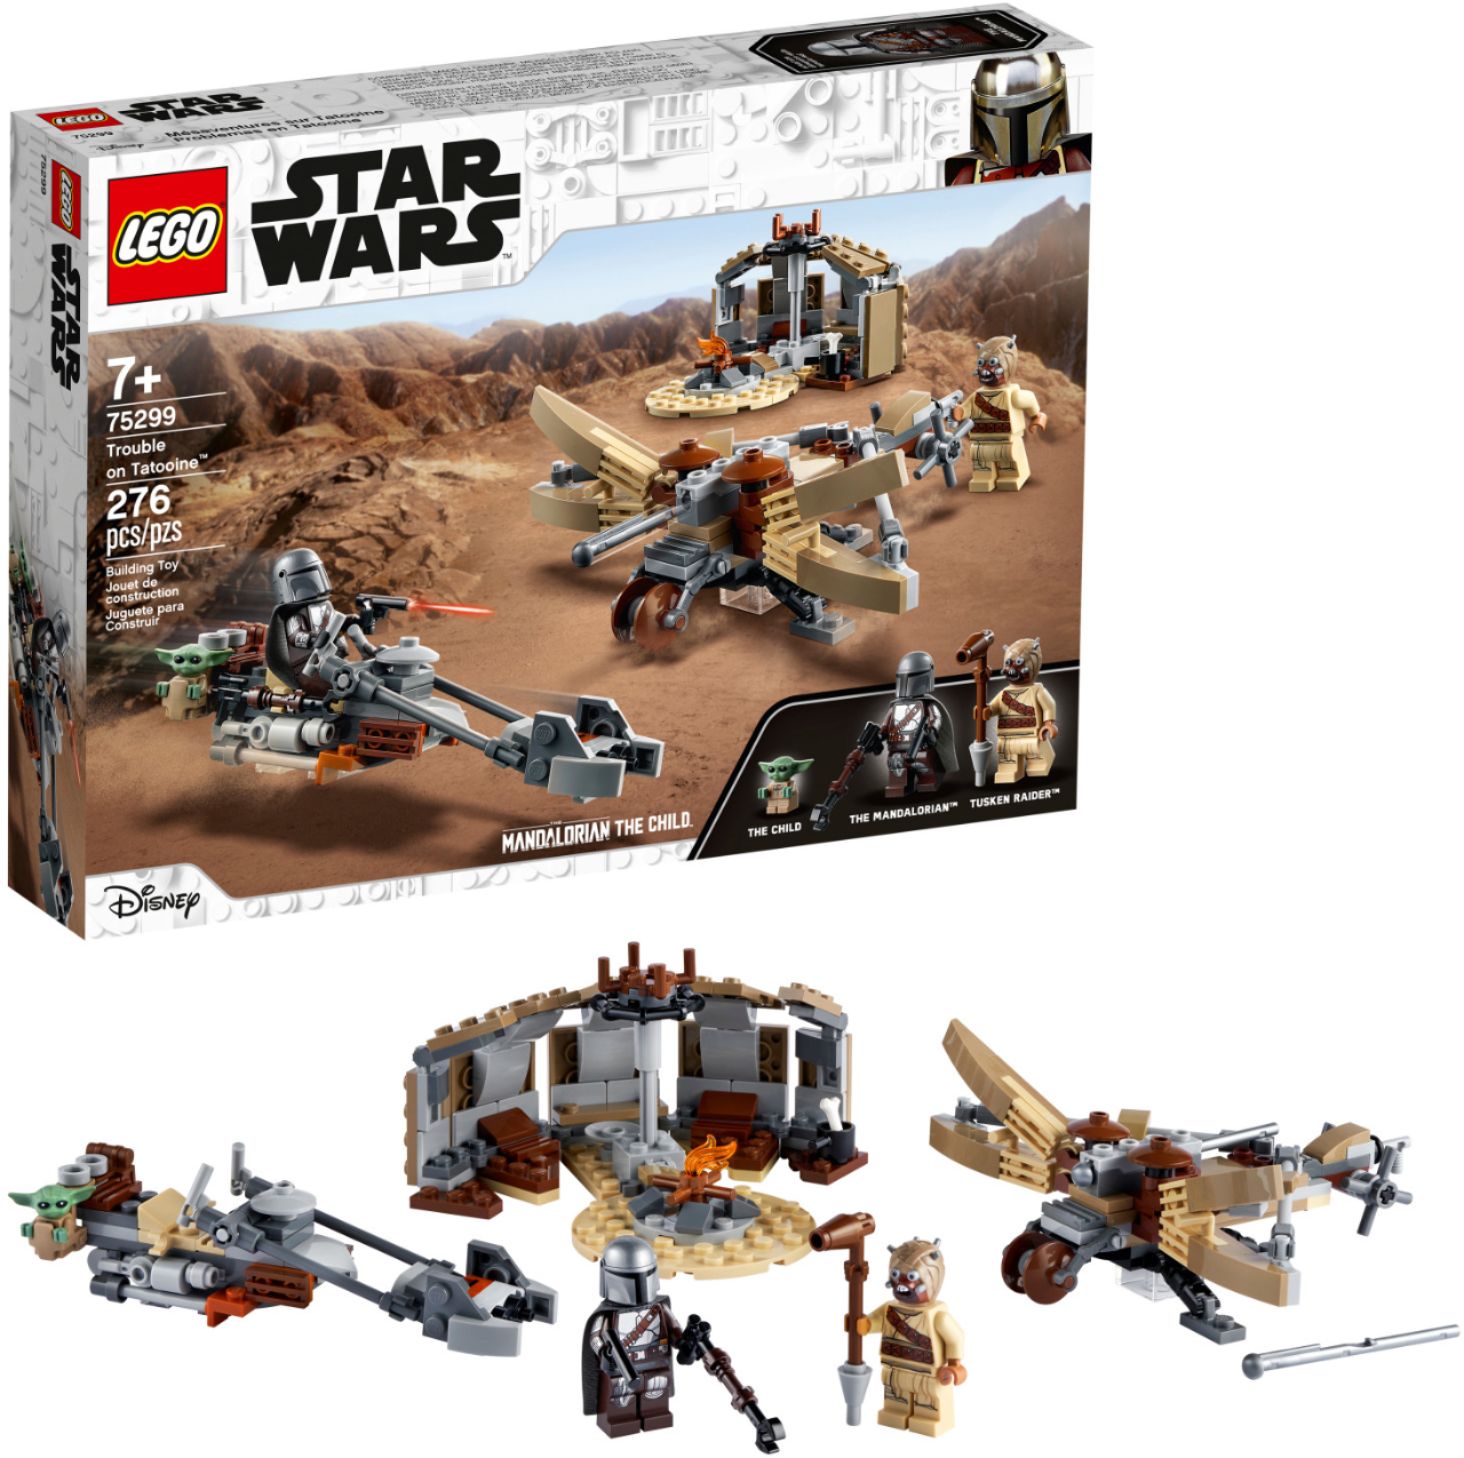 National folketælling spin Mudret LEGO Star Wars Trouble on Tatooine 75299 6332846 - Best Buy